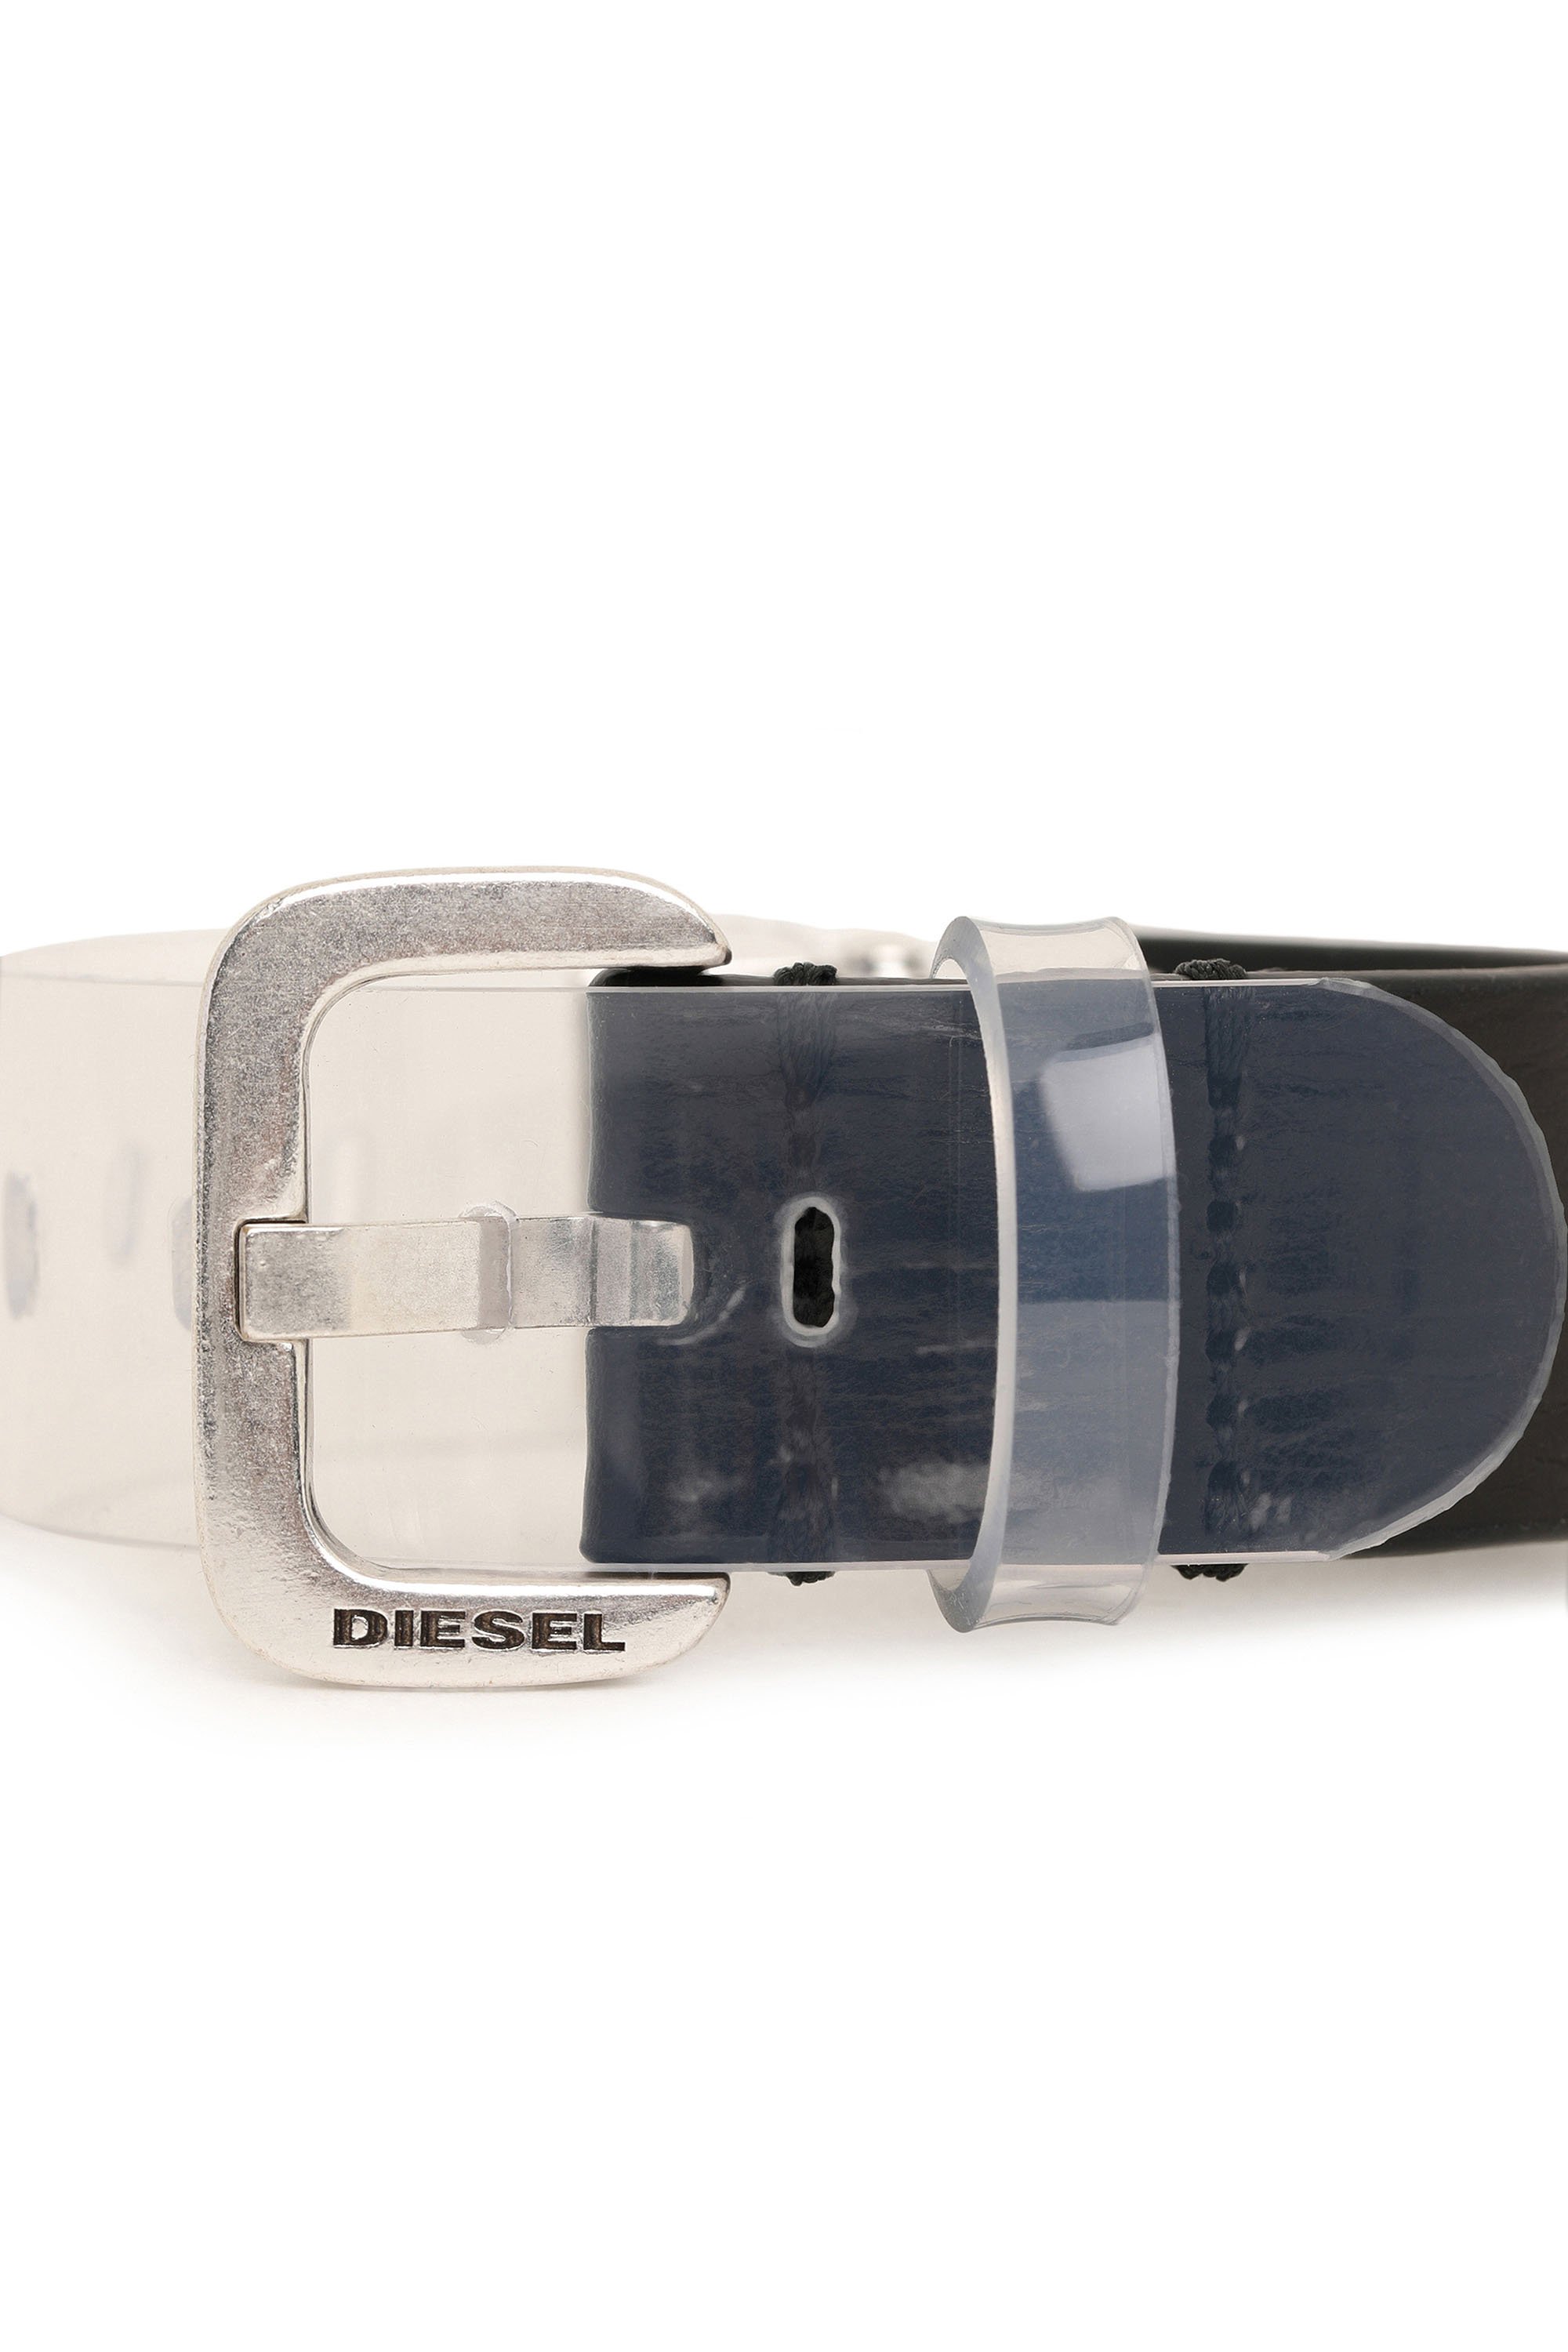 Diesel - A-LEVEL, Noir/Blanc - Image 3